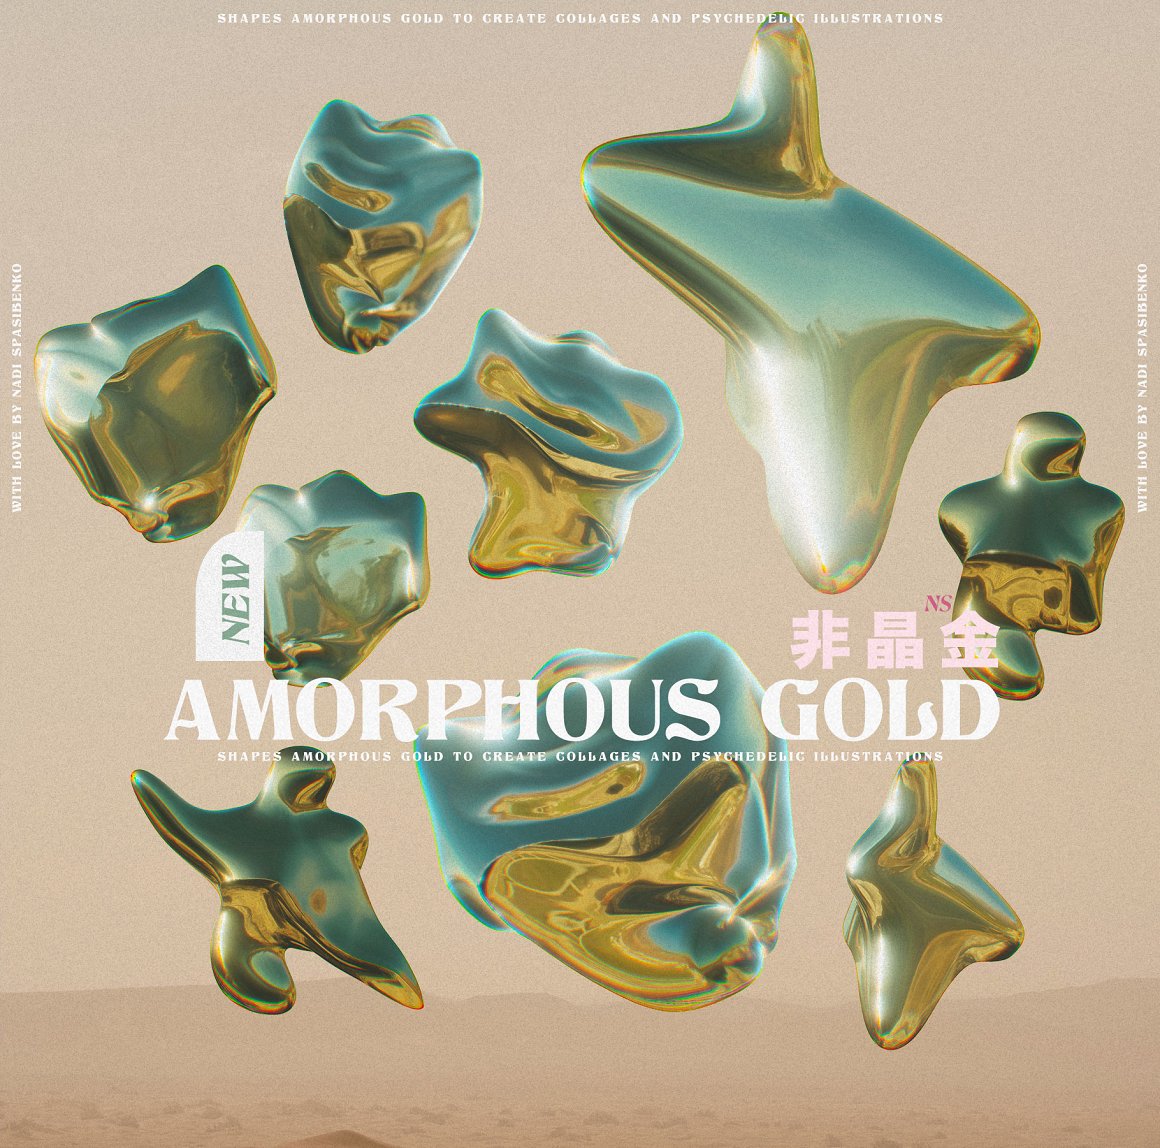 抽象艺术酸性液态3d迷幻黄金形状背景海报PBG素材包 Amorphous Liquid Gold 图片素材 第9张